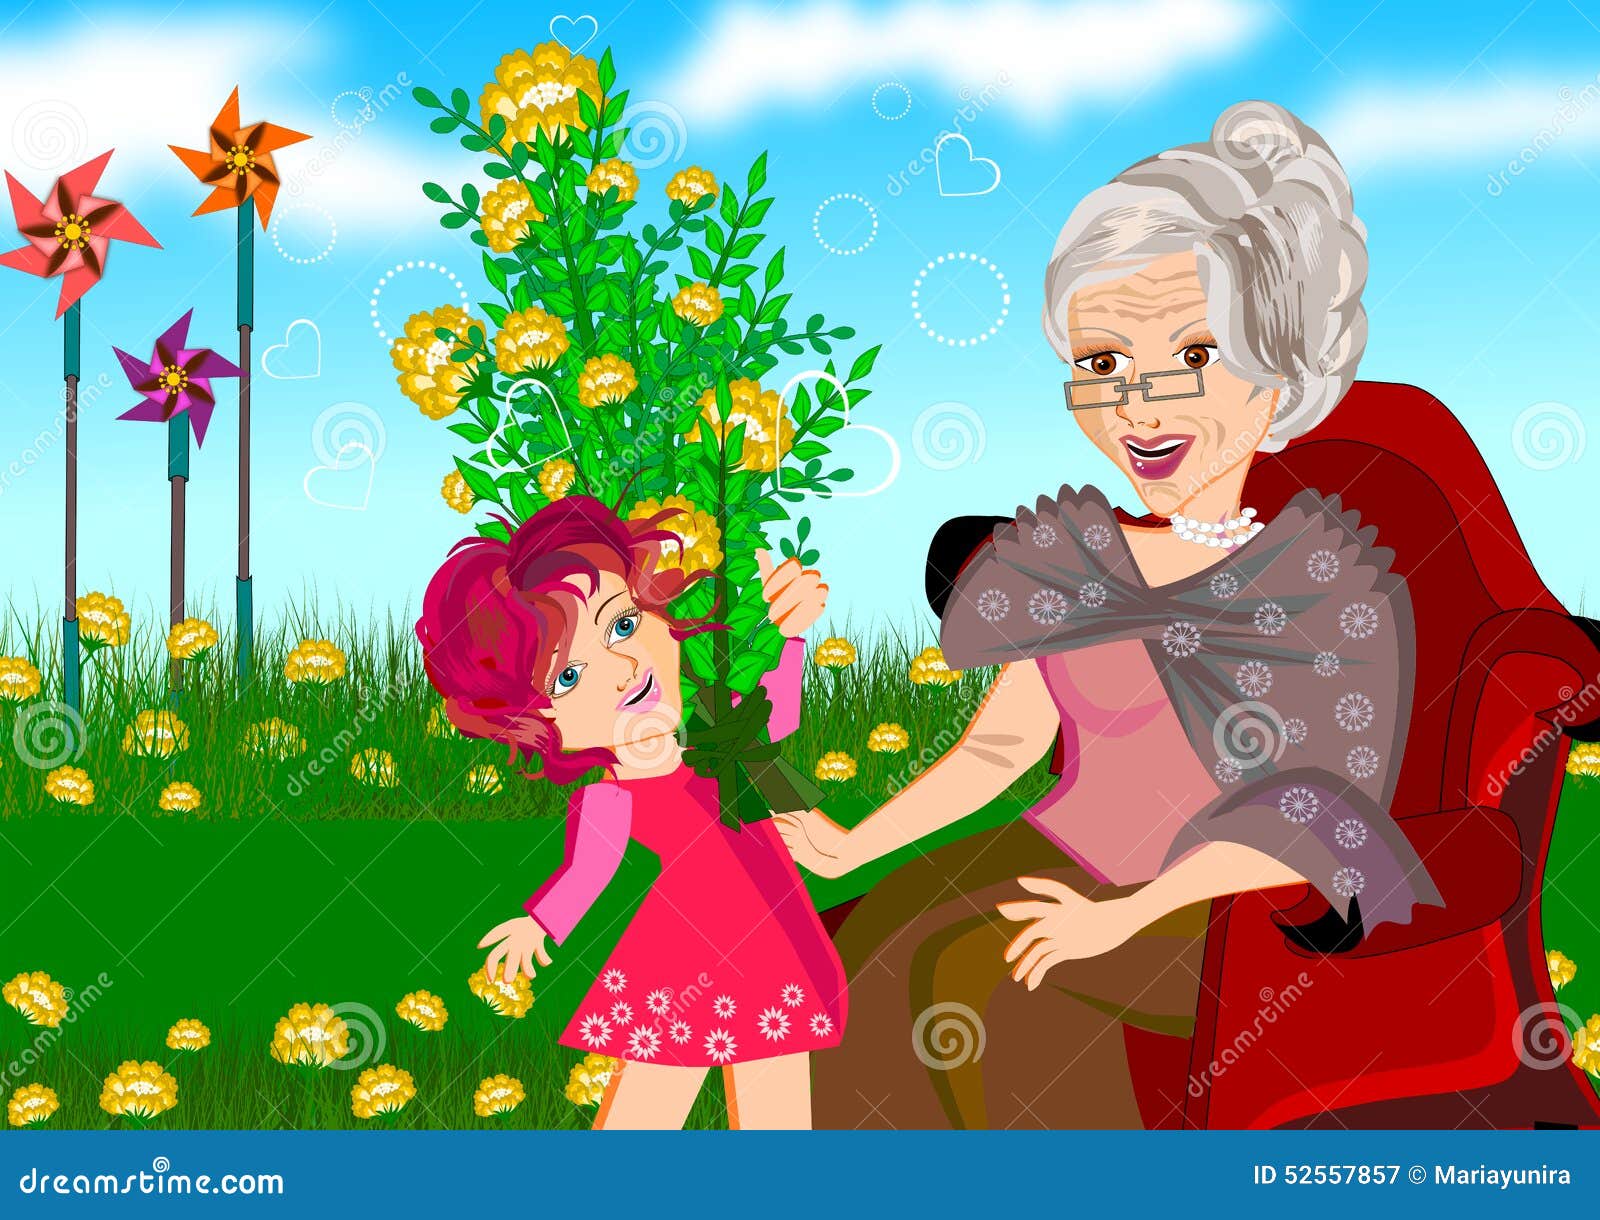 I visit my granny next week. Бабушка и внучка. Бабушка с внучкой в цветах. Бабушка с внучатами иллюстрации. Бабушка и внуки мультяшные.